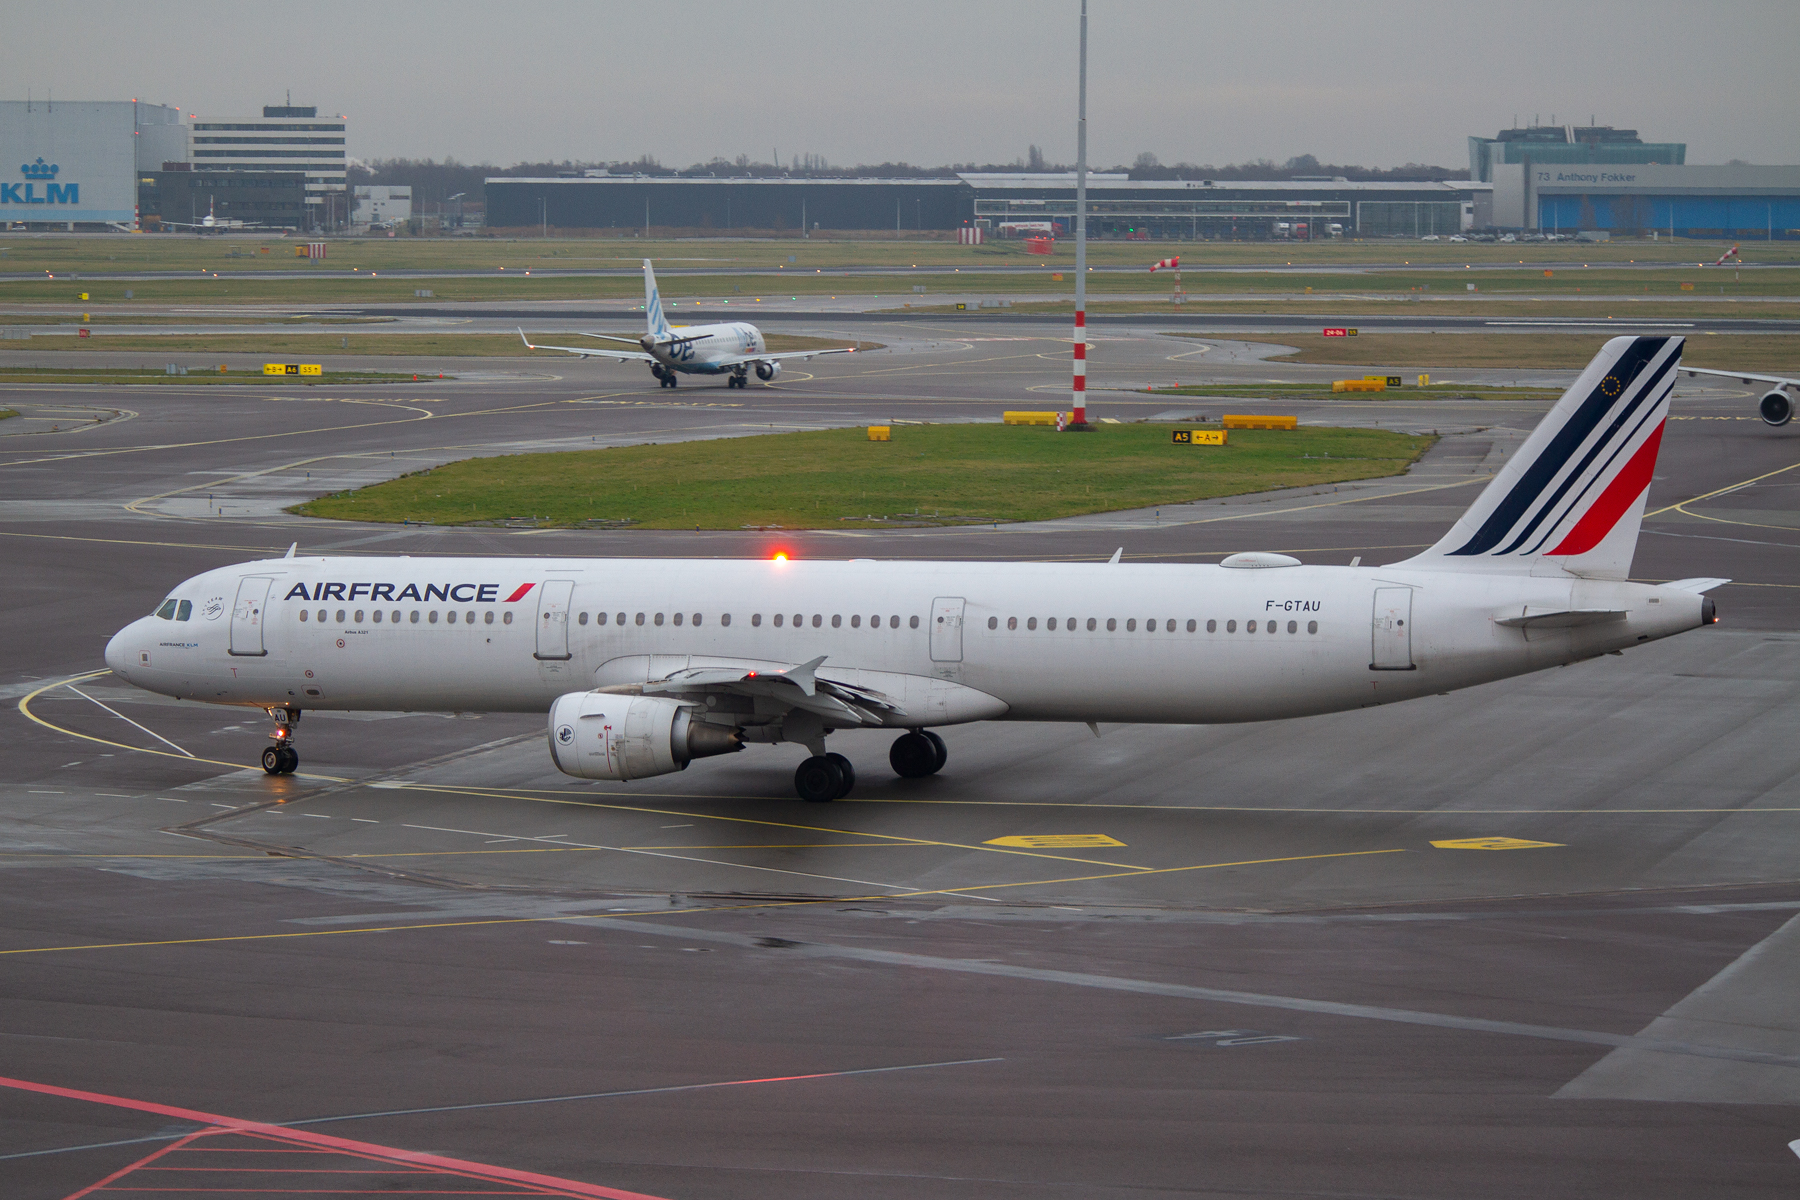 Air France Airbus A321-200 F-GTAU at Schiphol